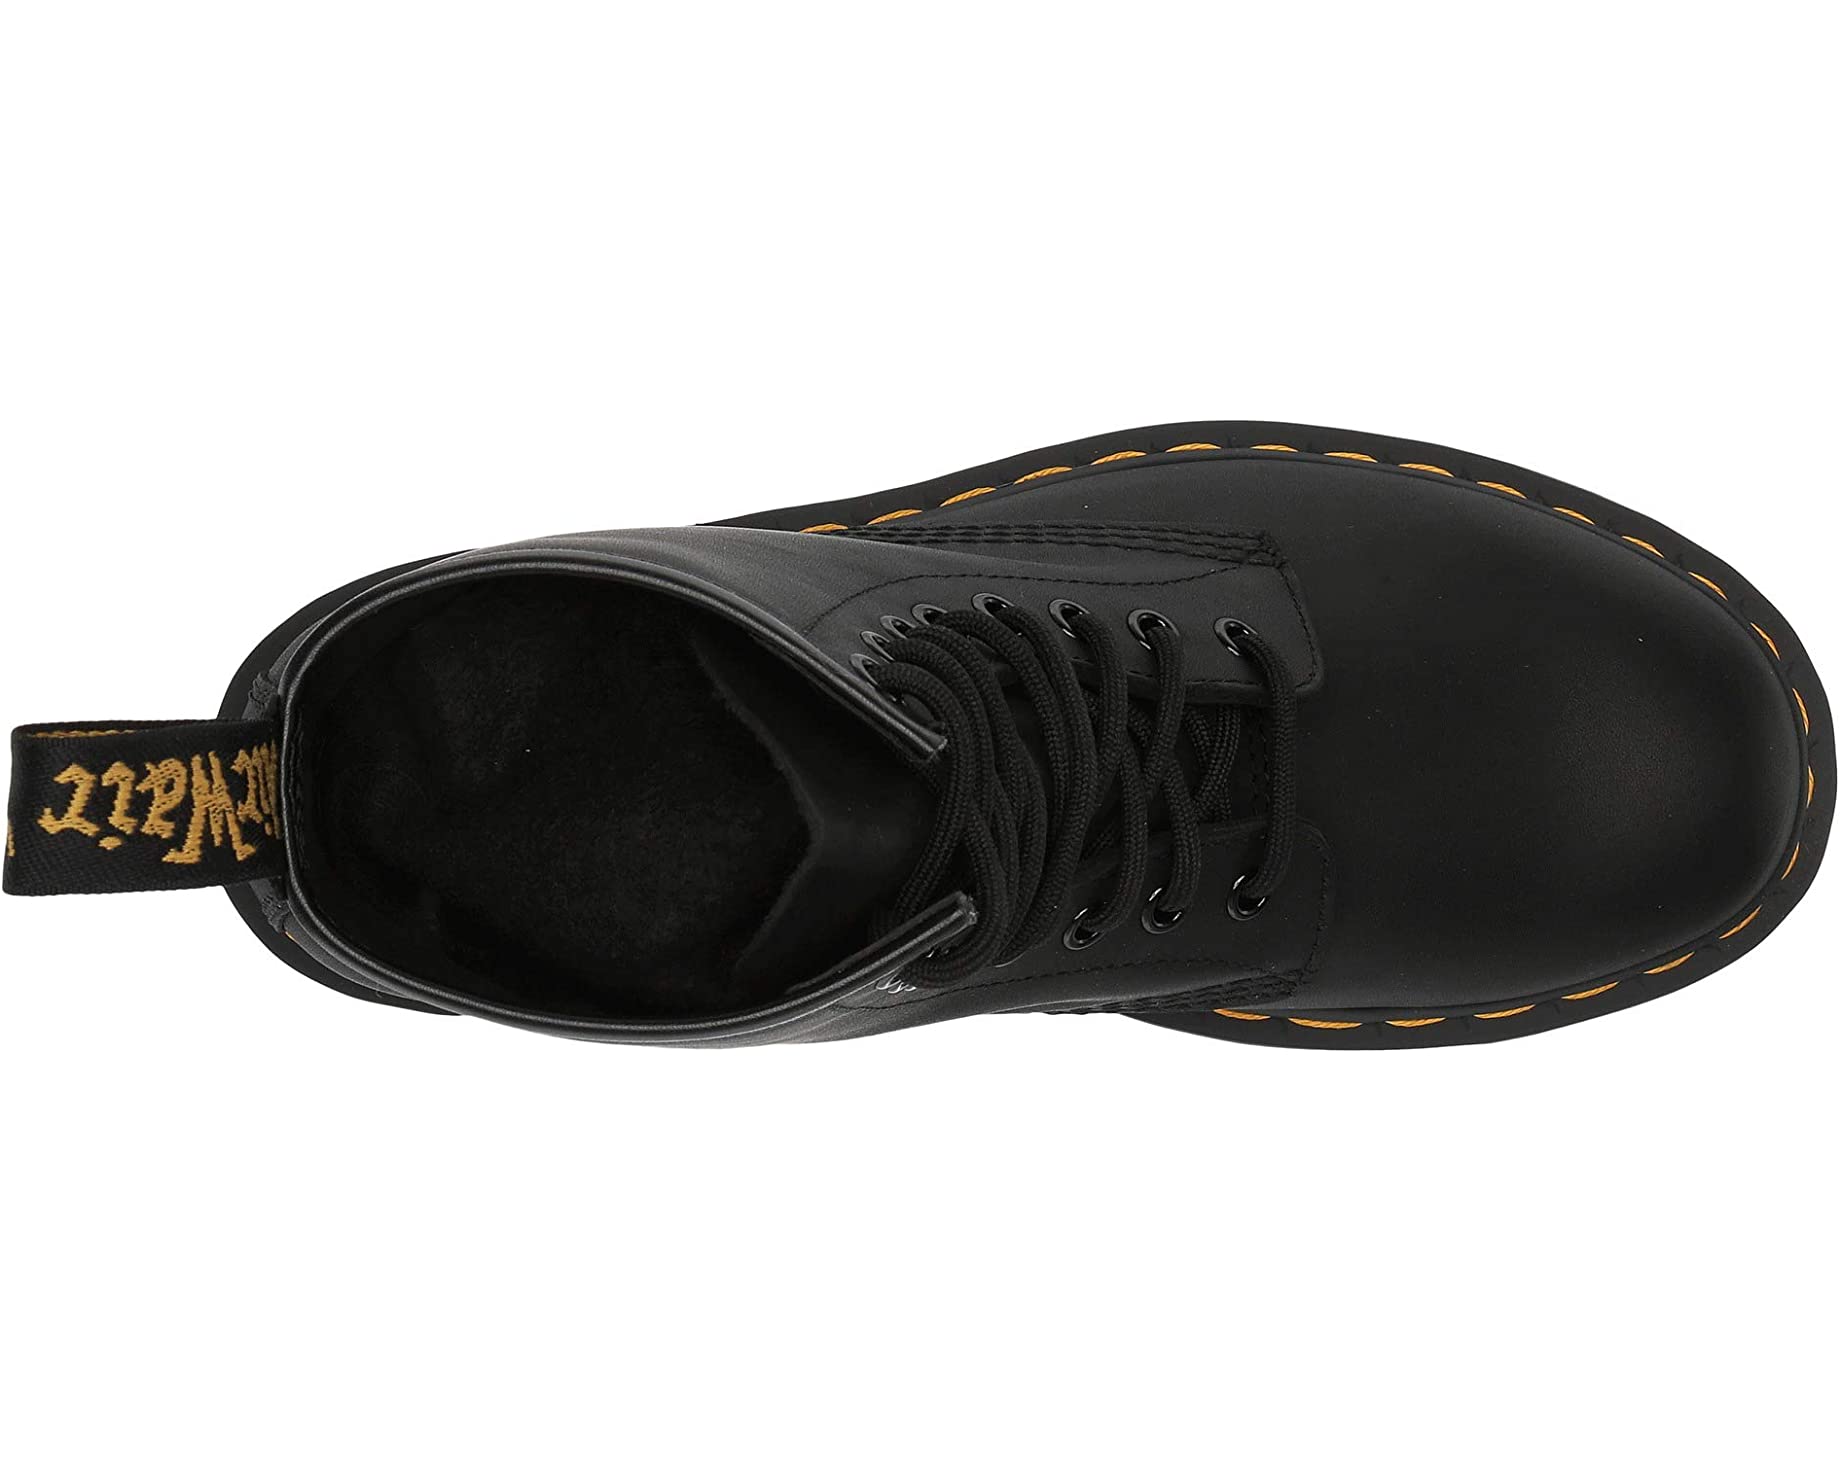 Ботинки 1460 Greasy Leather Boot Dr. Martens, черный ботинки dr martens 1460 zipped черный